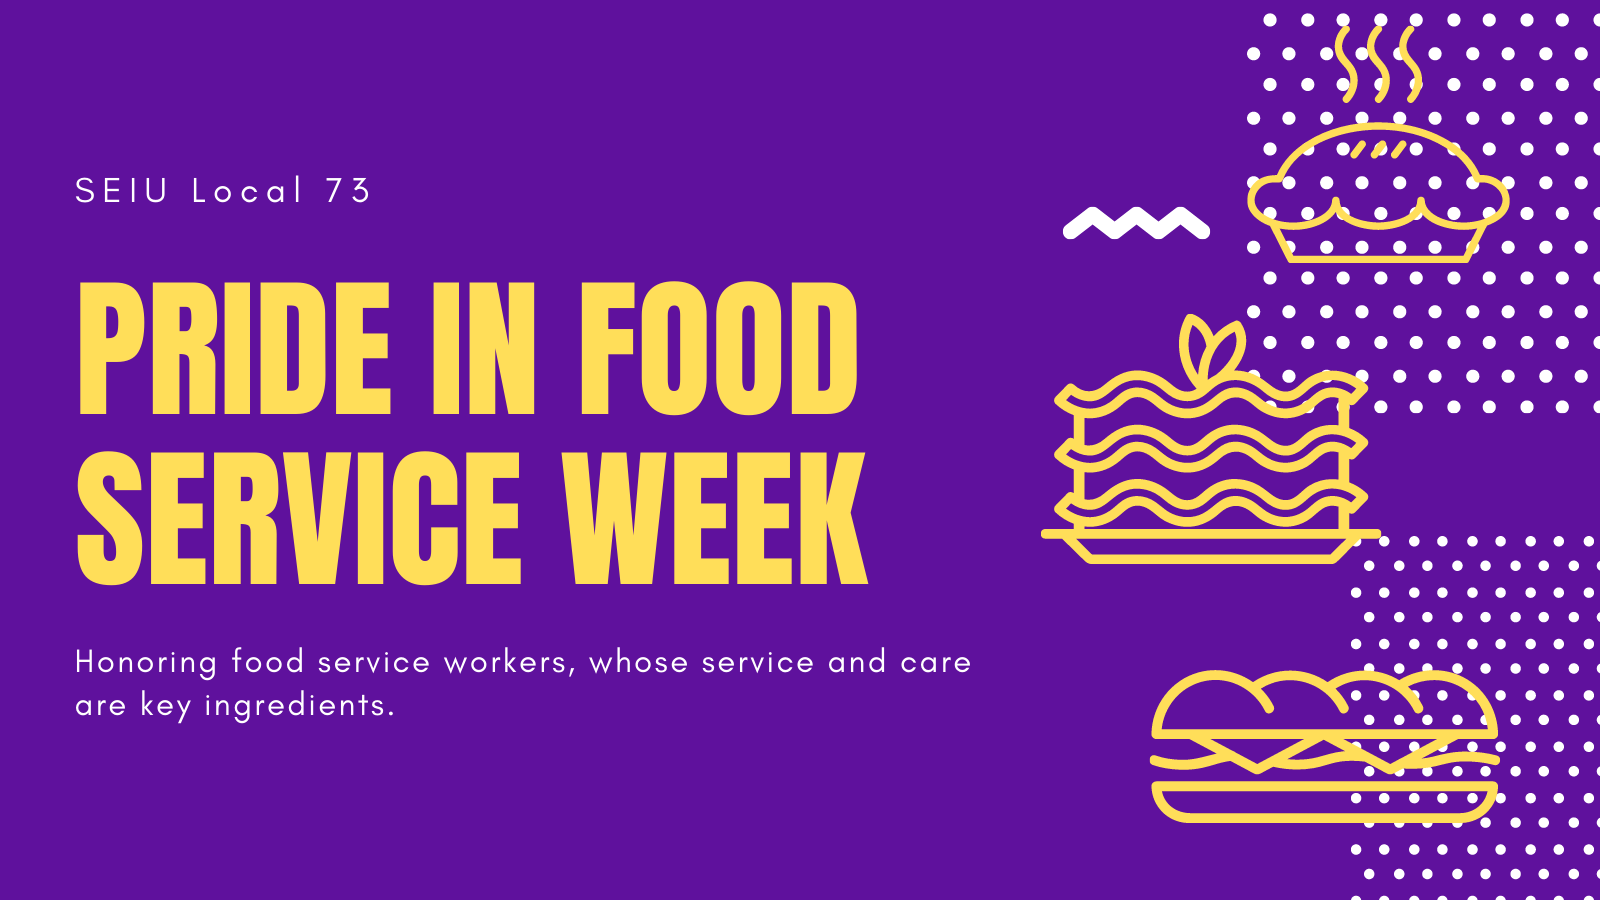 Pride in Food Service Week 2021 SEIU Local 73